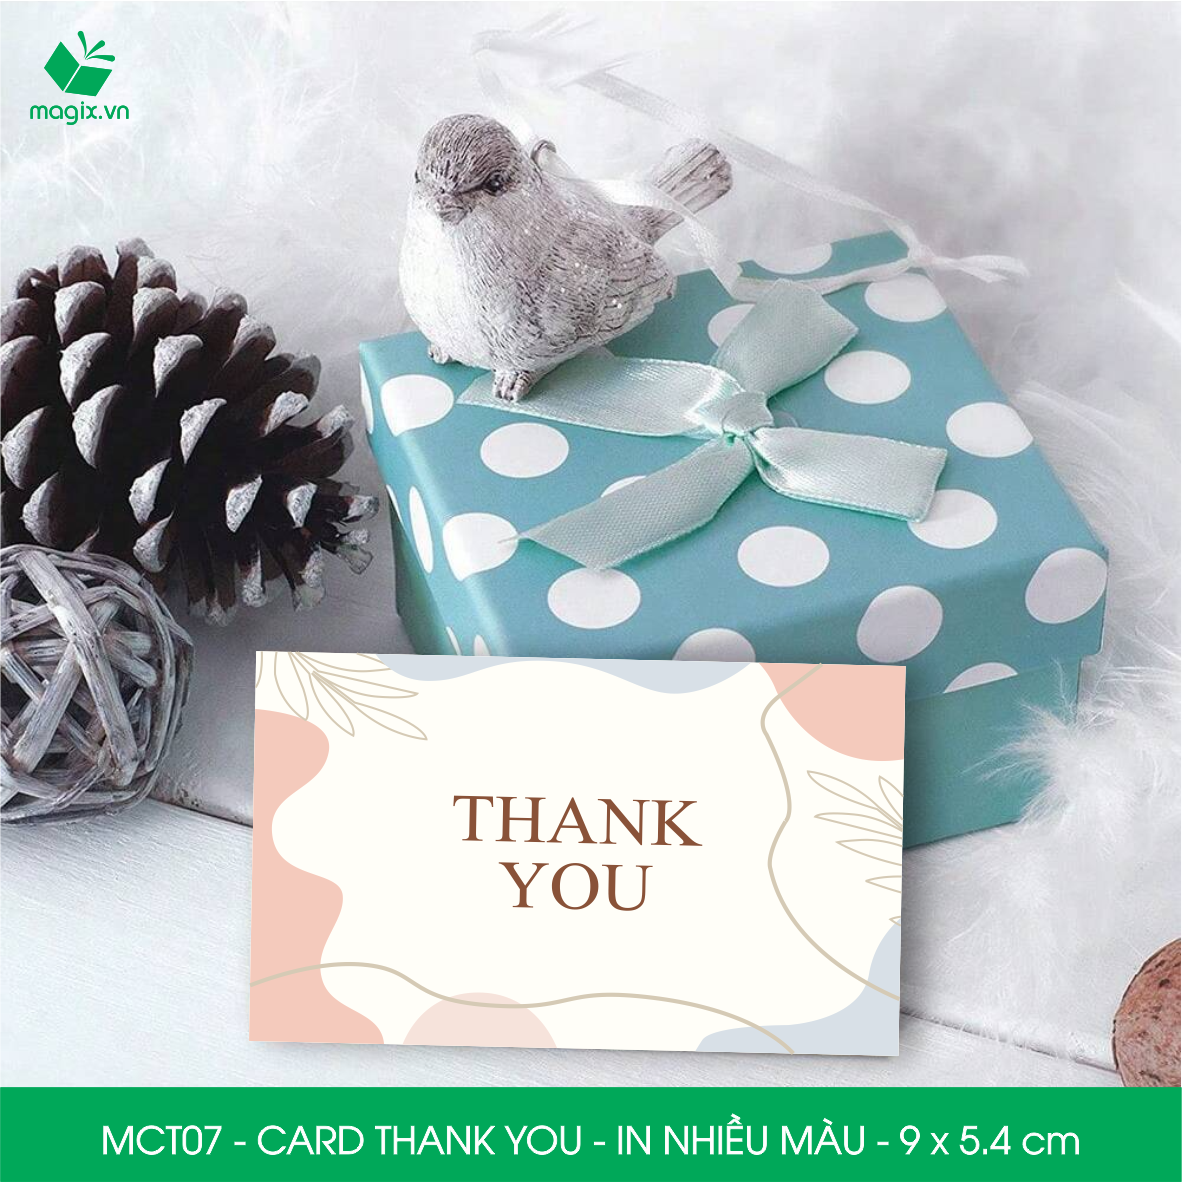 MCT07 - 9x5.4 cm - 50 Card Thank you, Thiệp cảm ơn khách hàng, card cám ơn cứng cáp sang trọng